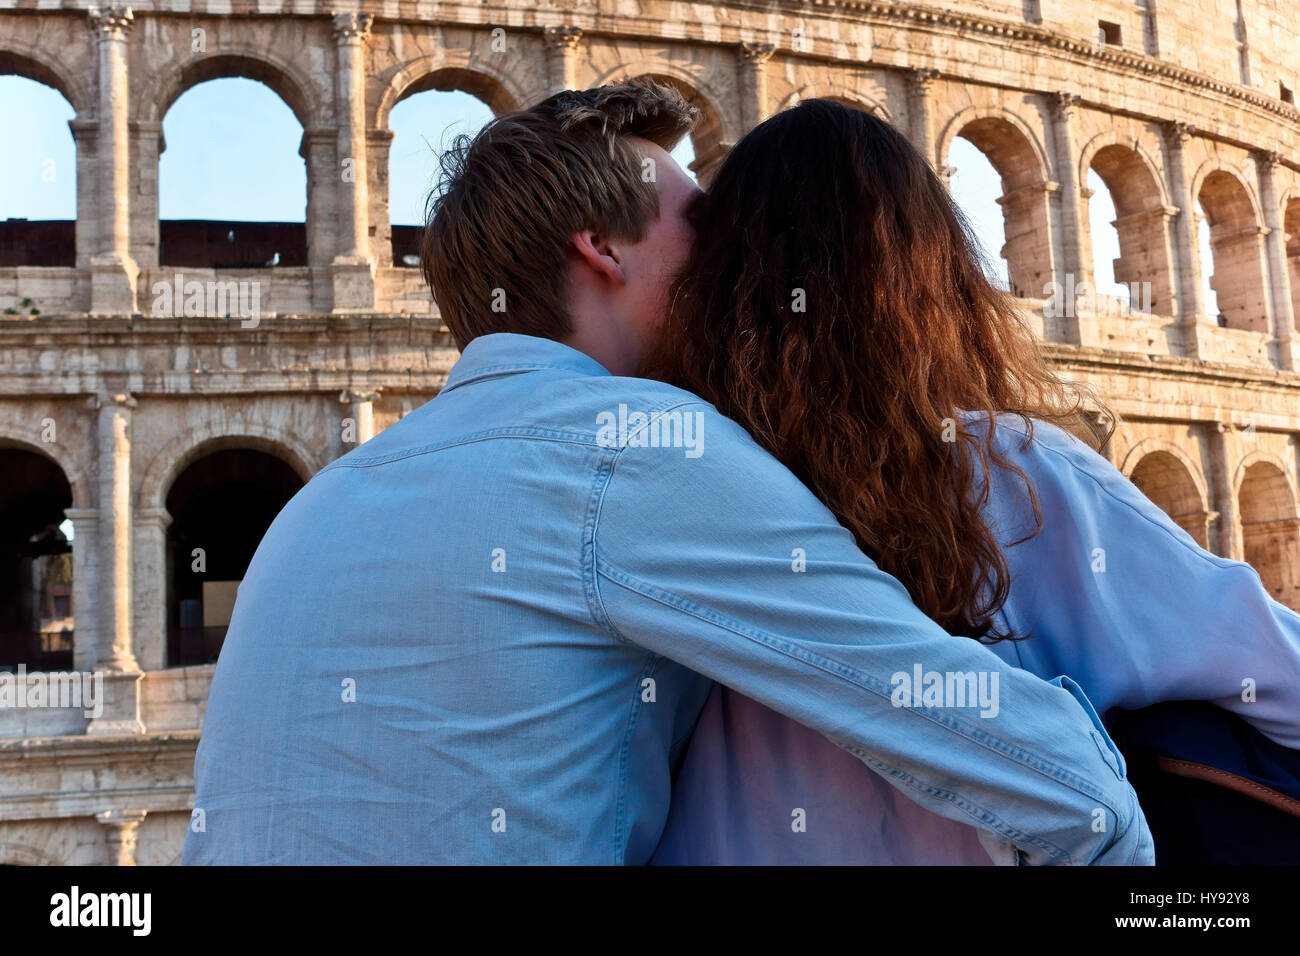 Couple romantique, autour du bras, à la recherche au Colisée de Rome. Colosseo. Vue arrière, vue de l'arrière. Valentines Day. Toutists. Italie Banque D'Images